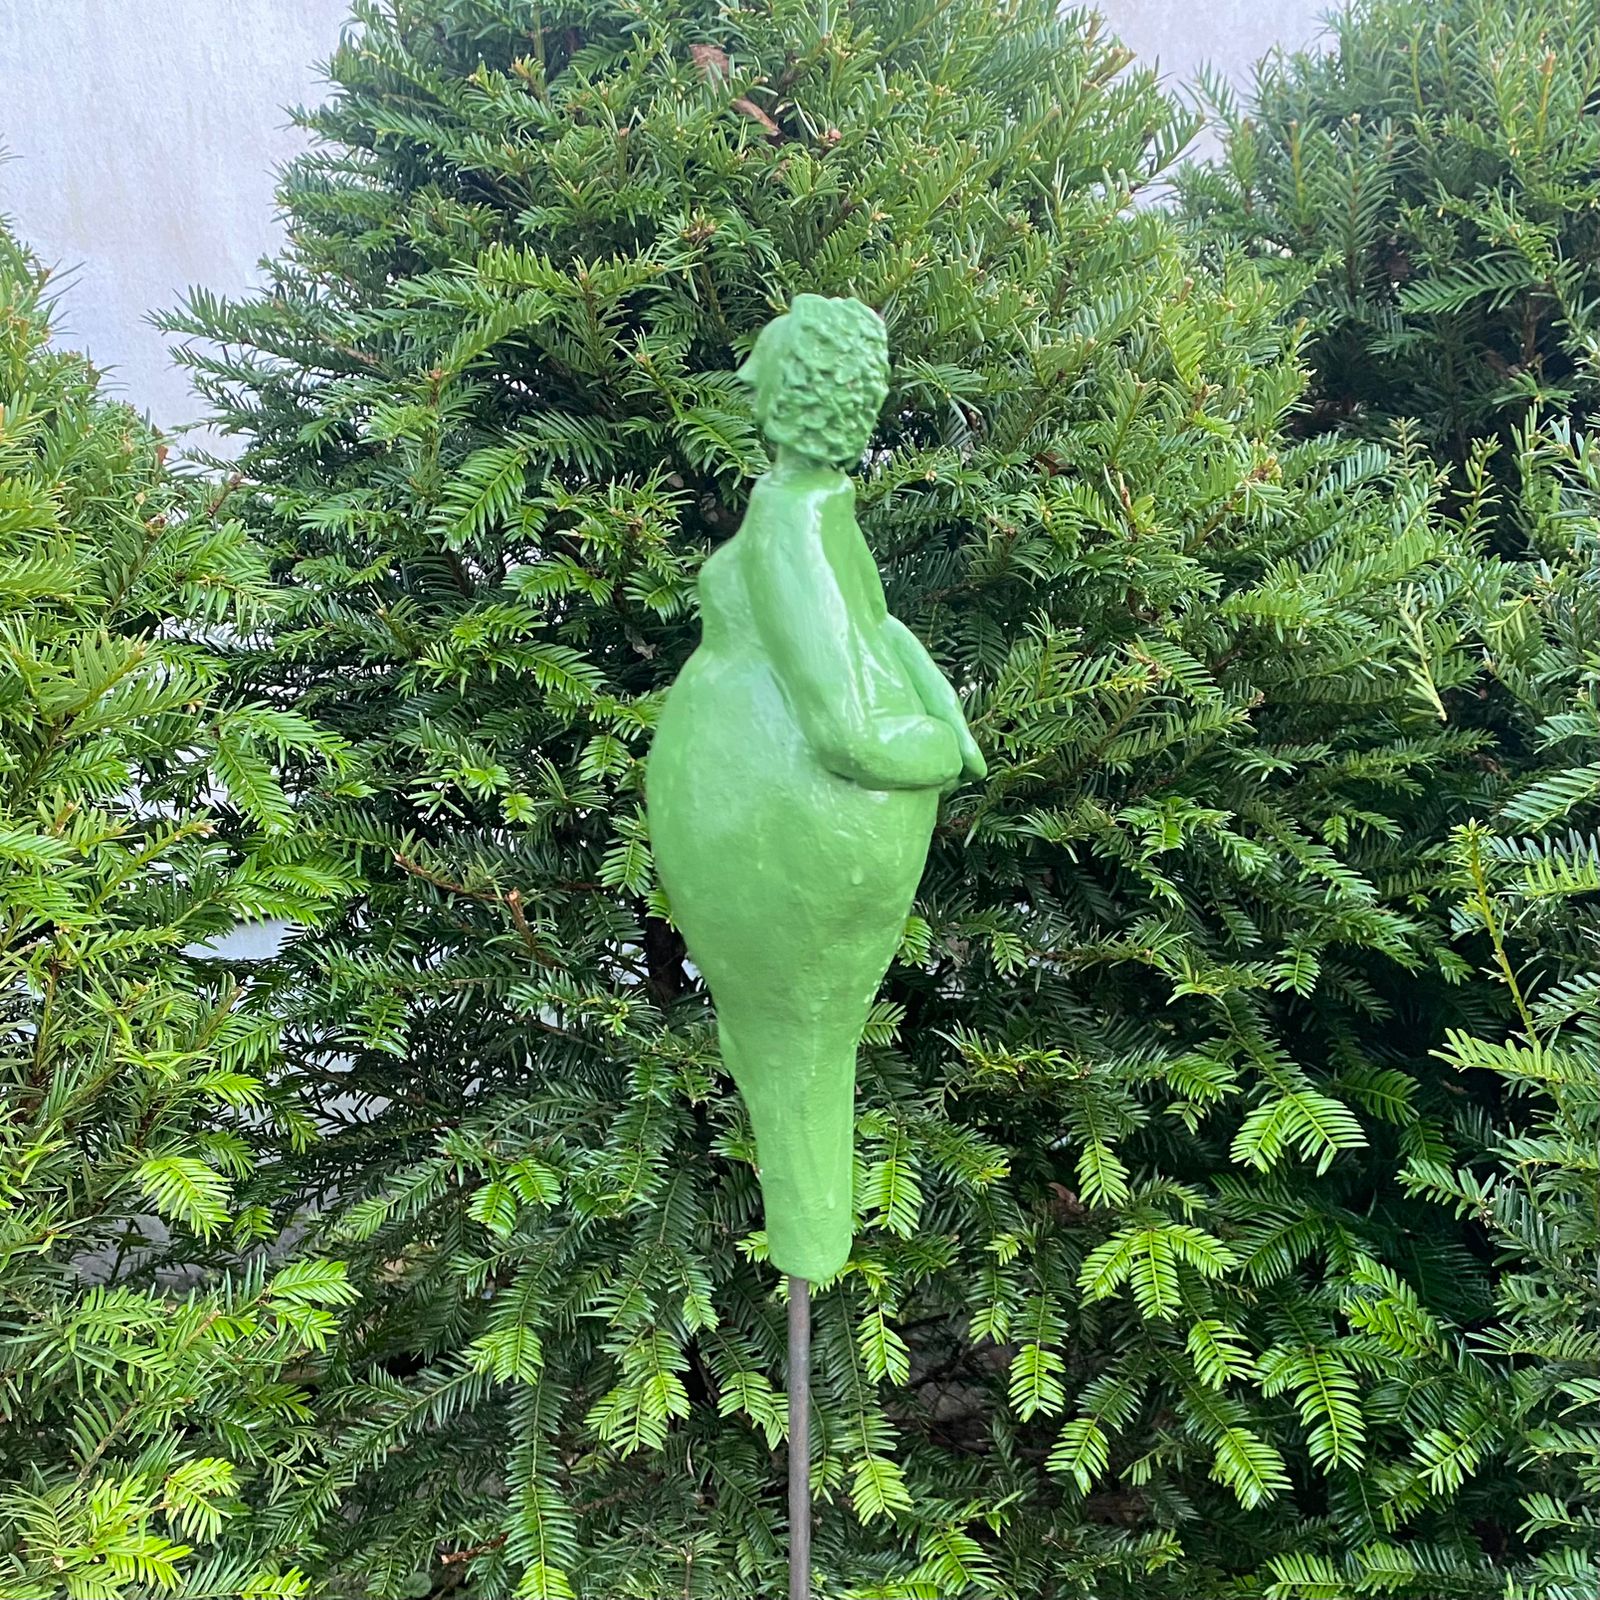 Keramikfigur, Gartenfigur, apfelgrüne Glasur. Serie "Lustige Weiber", Seitenansicht